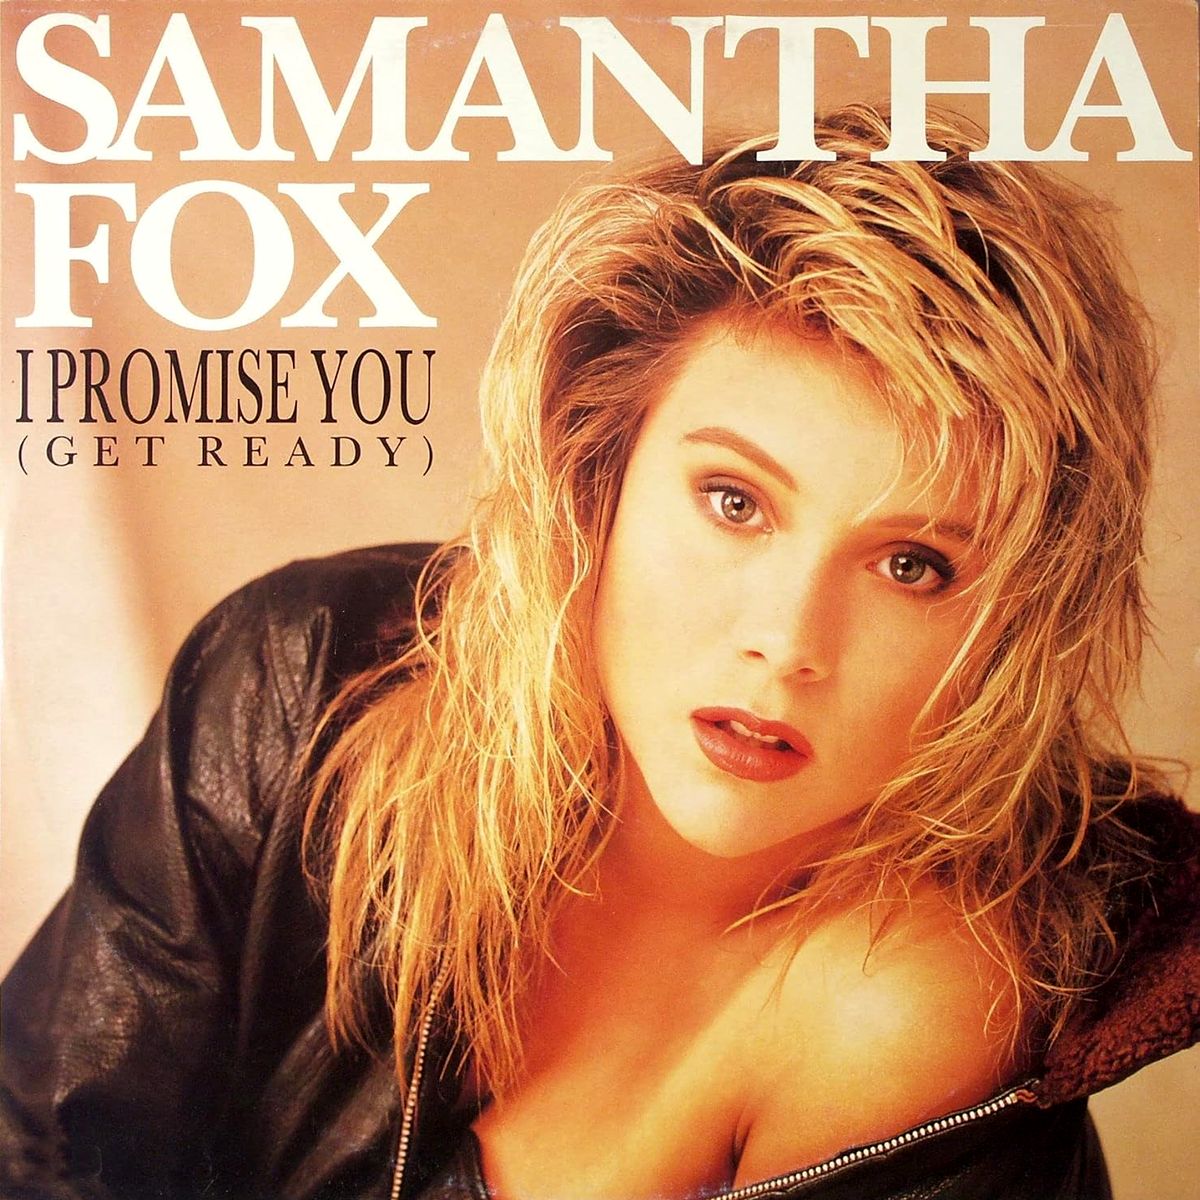 Samantha fox 2015